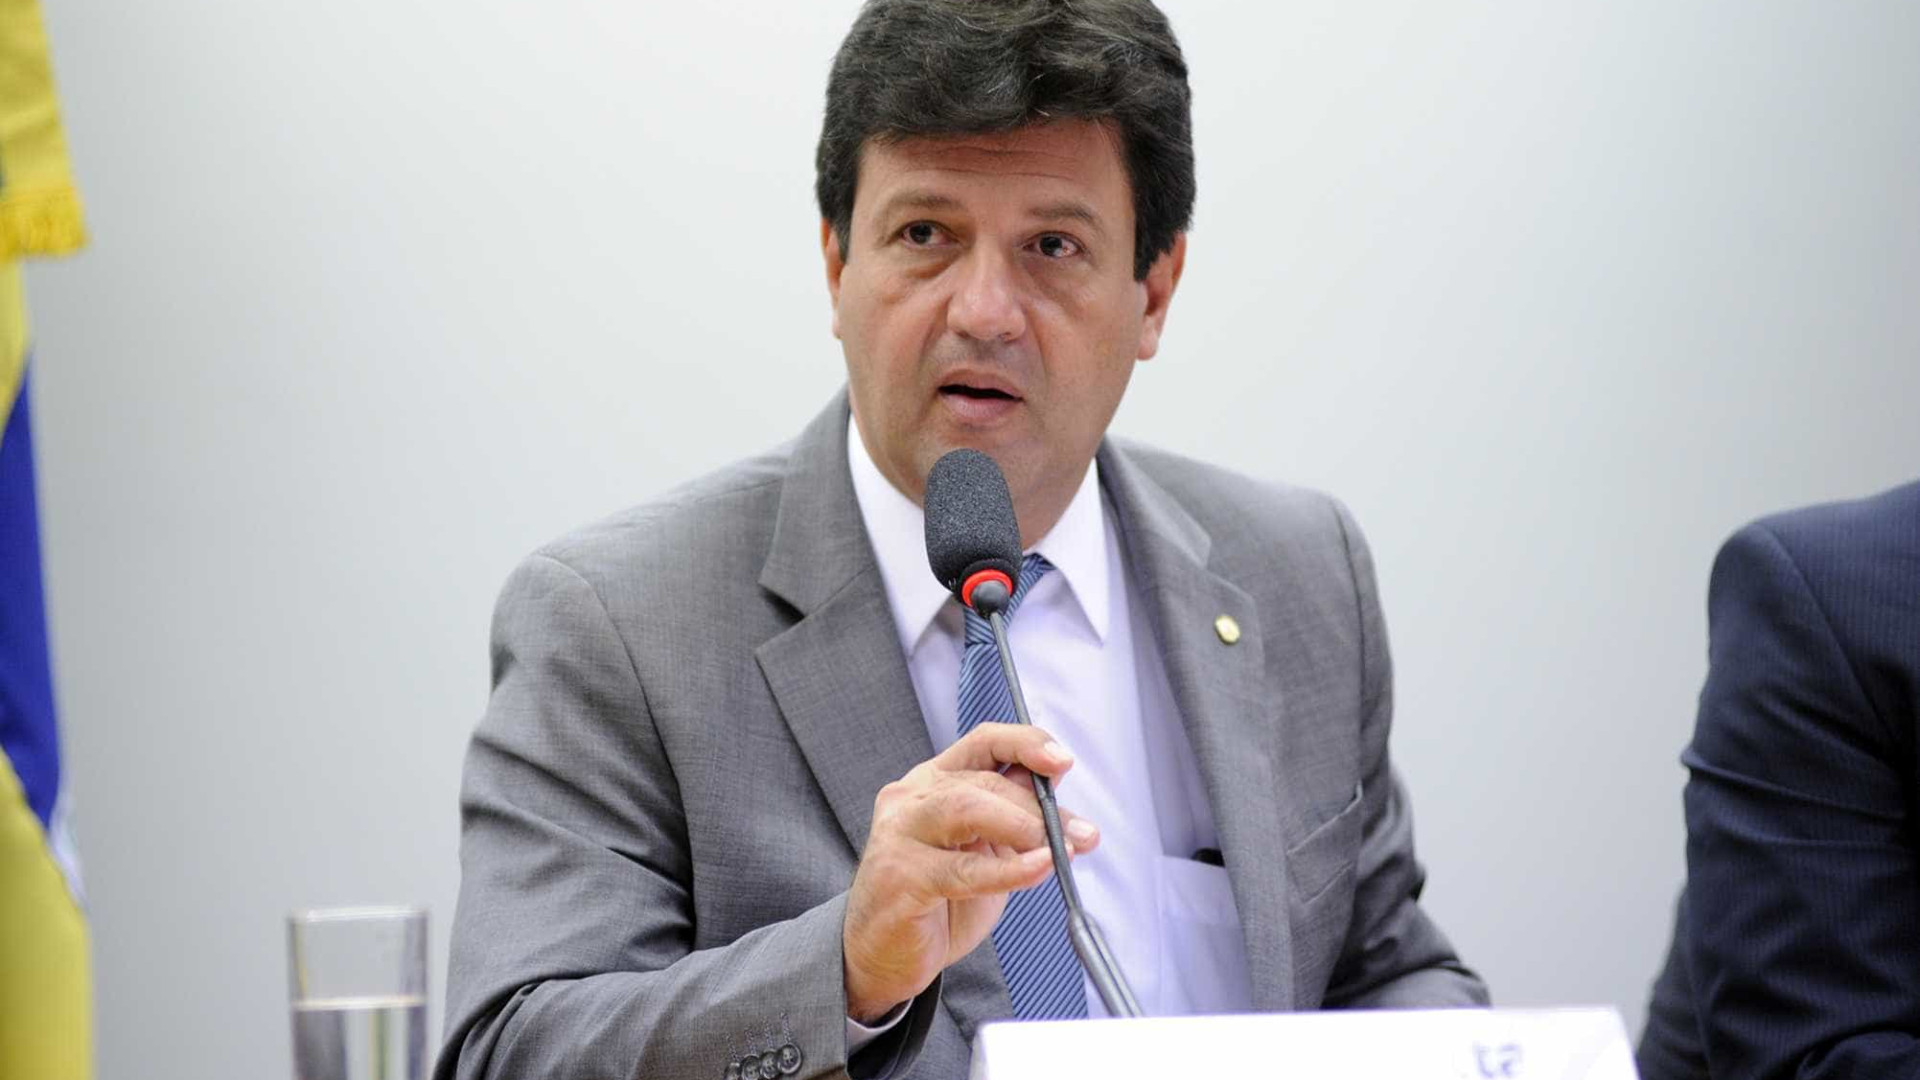 Ortopedista, deputado do DEM será ministro da Saúde de Bolsonaro